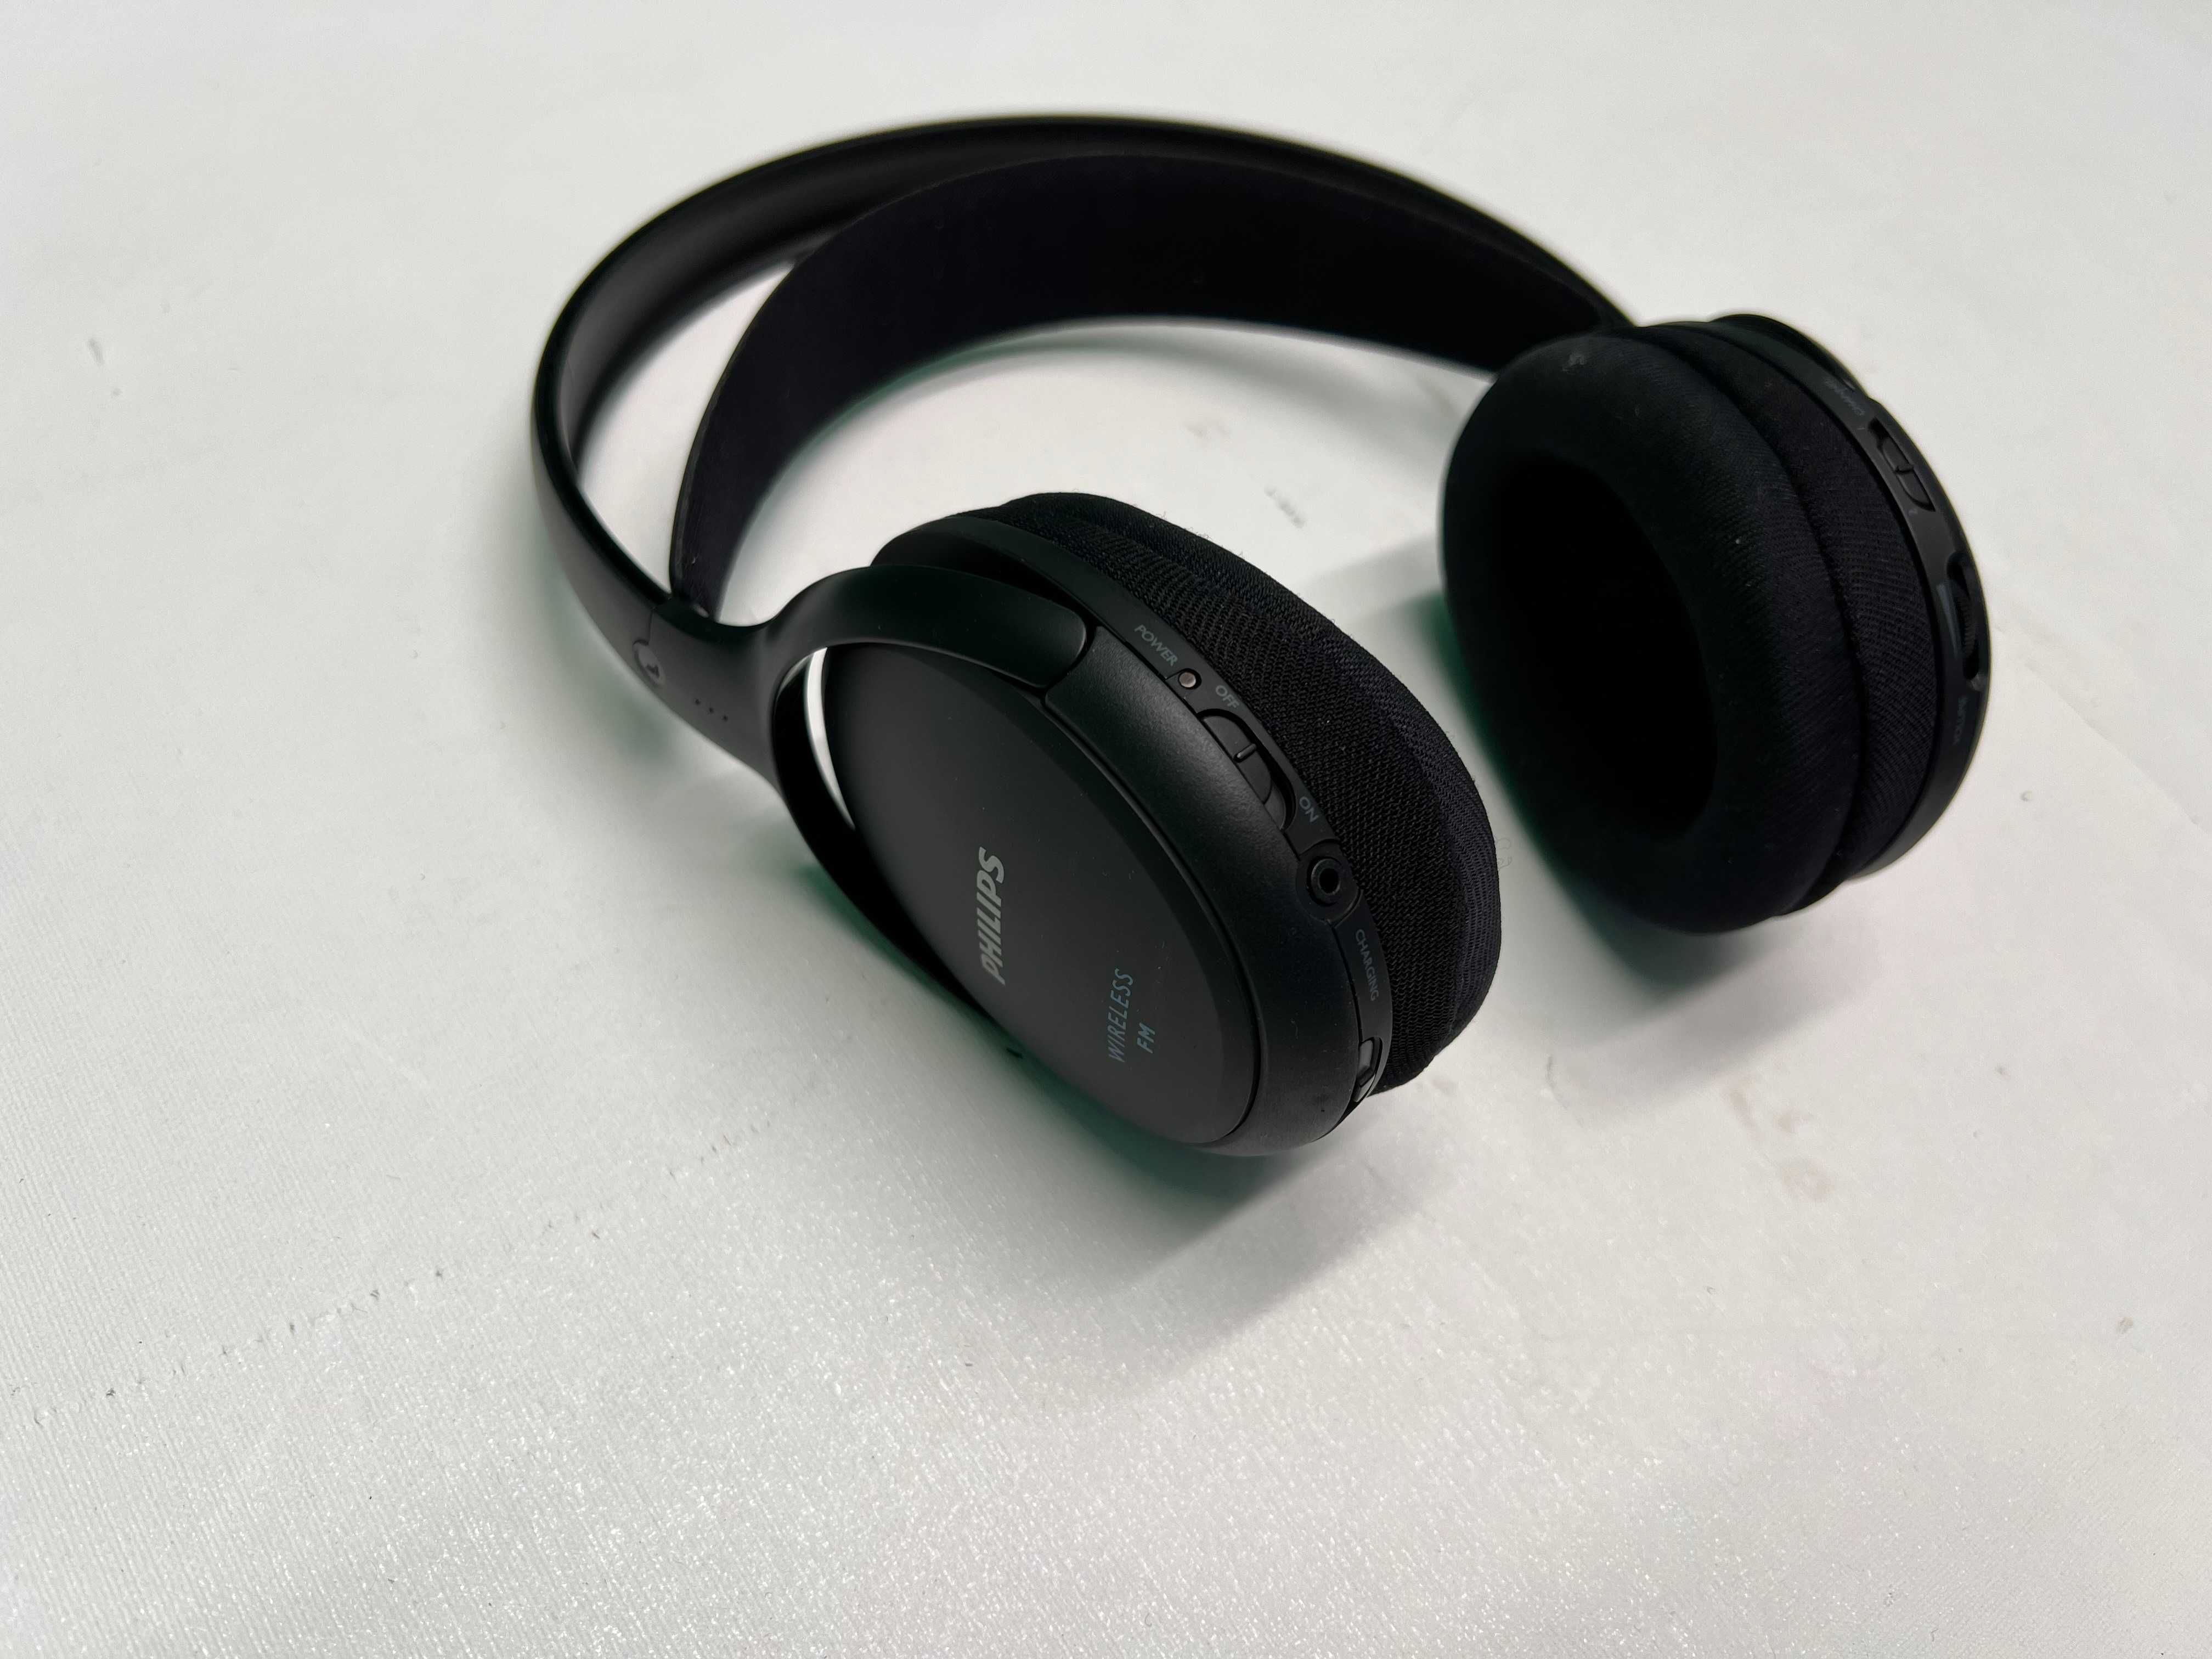 Słuchawki bezprzewodowe nauszne Philips SHC5200